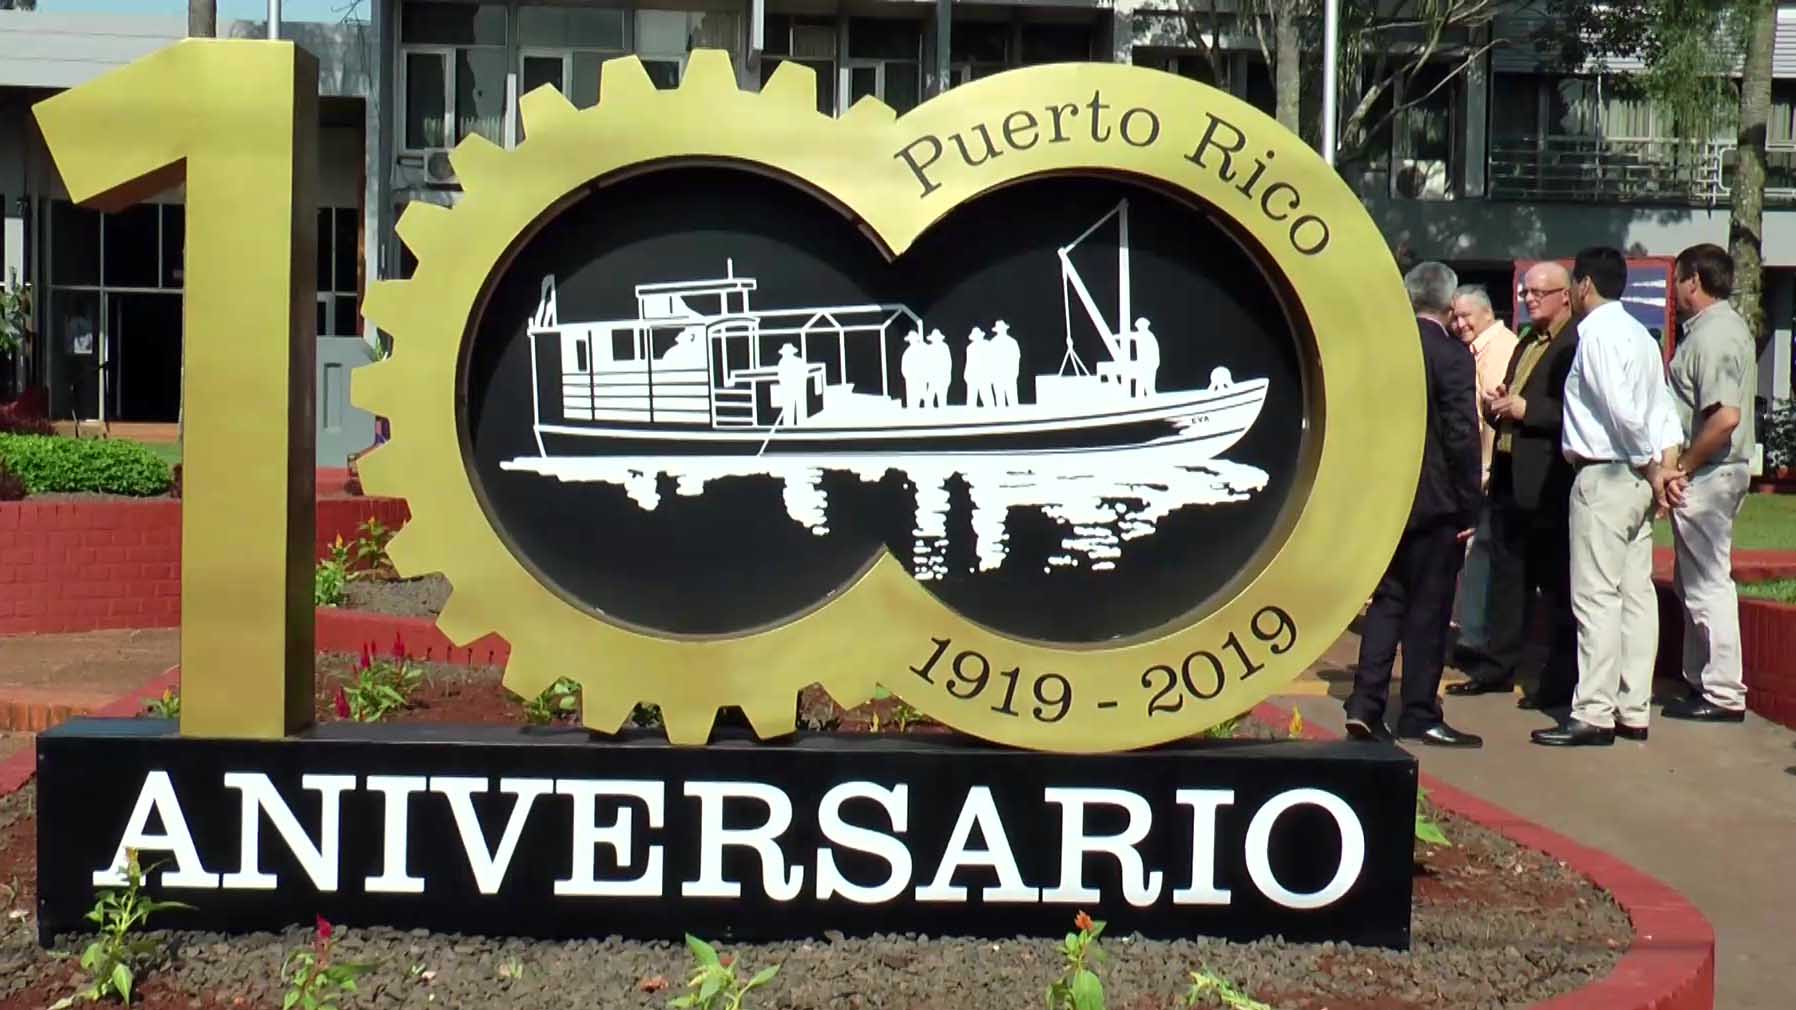 Aniversario: Puerto Rico, 100 años de progreso y crecimiento